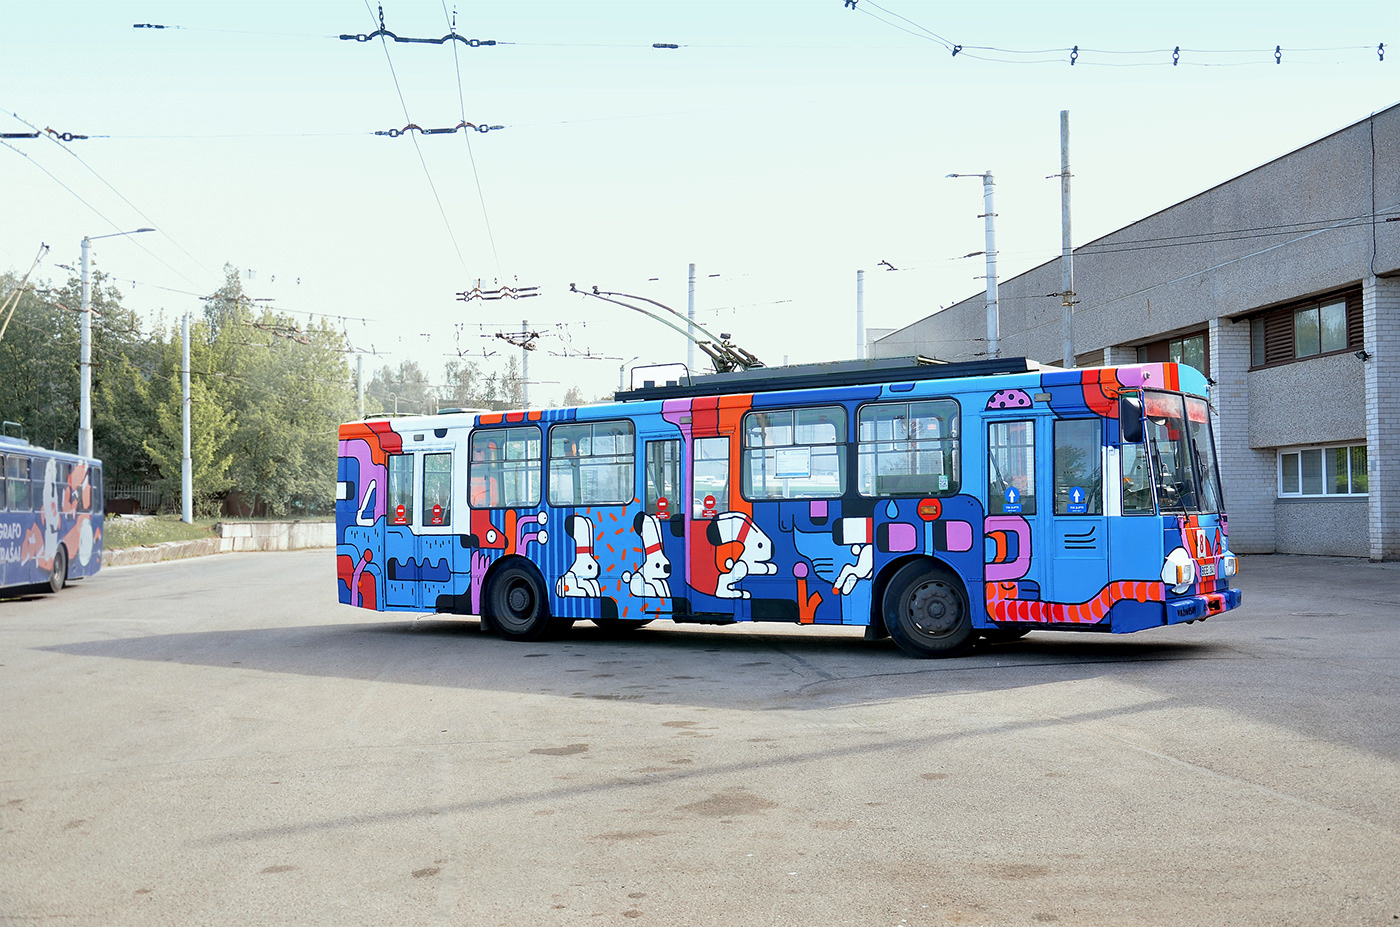 trolleybus kaunas ettoja arturshirin artbus streetart CreativeGraffiti creativestreetart lithuaniaart giffiti